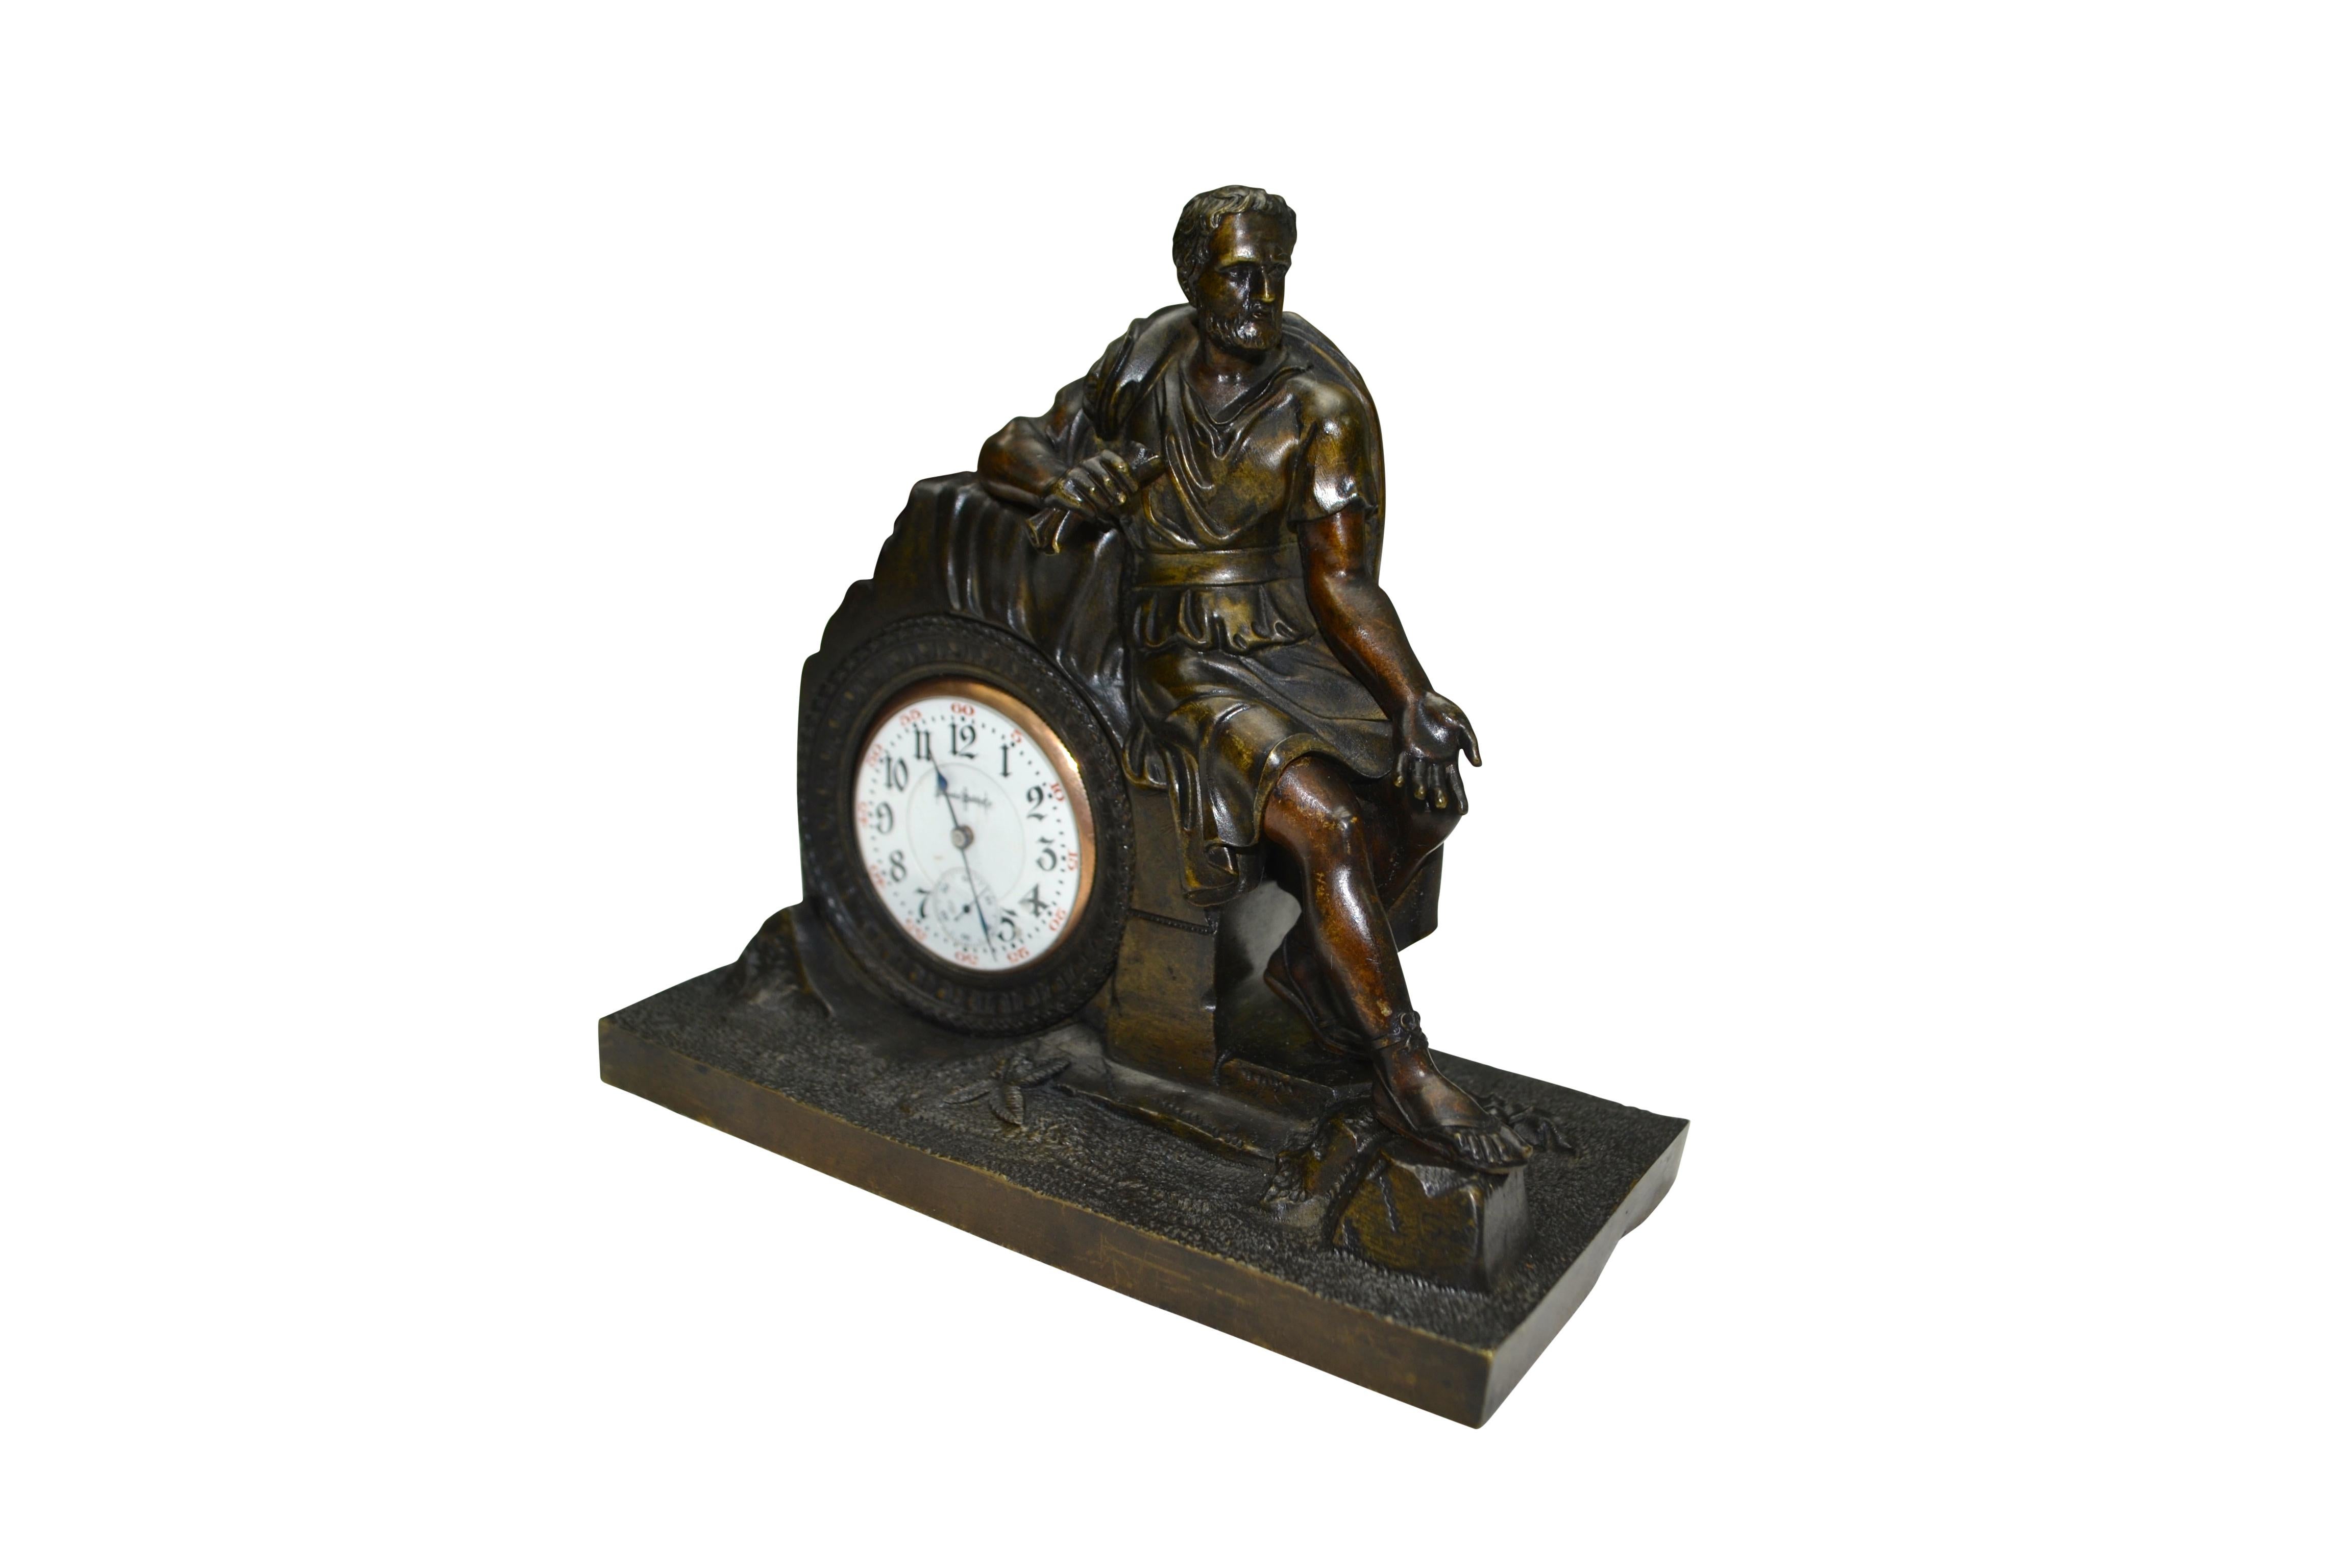 Ein hochwertiger neoklassizistischer Uhrenhalter aus patinierter Bronze, der einen klassisch drapierten römischen Kaiser zeigt, der auf einem Ruinenfeld sitzt und eine Schriftrolle in der rechten Hand hält; die linke Hand ist nach unten